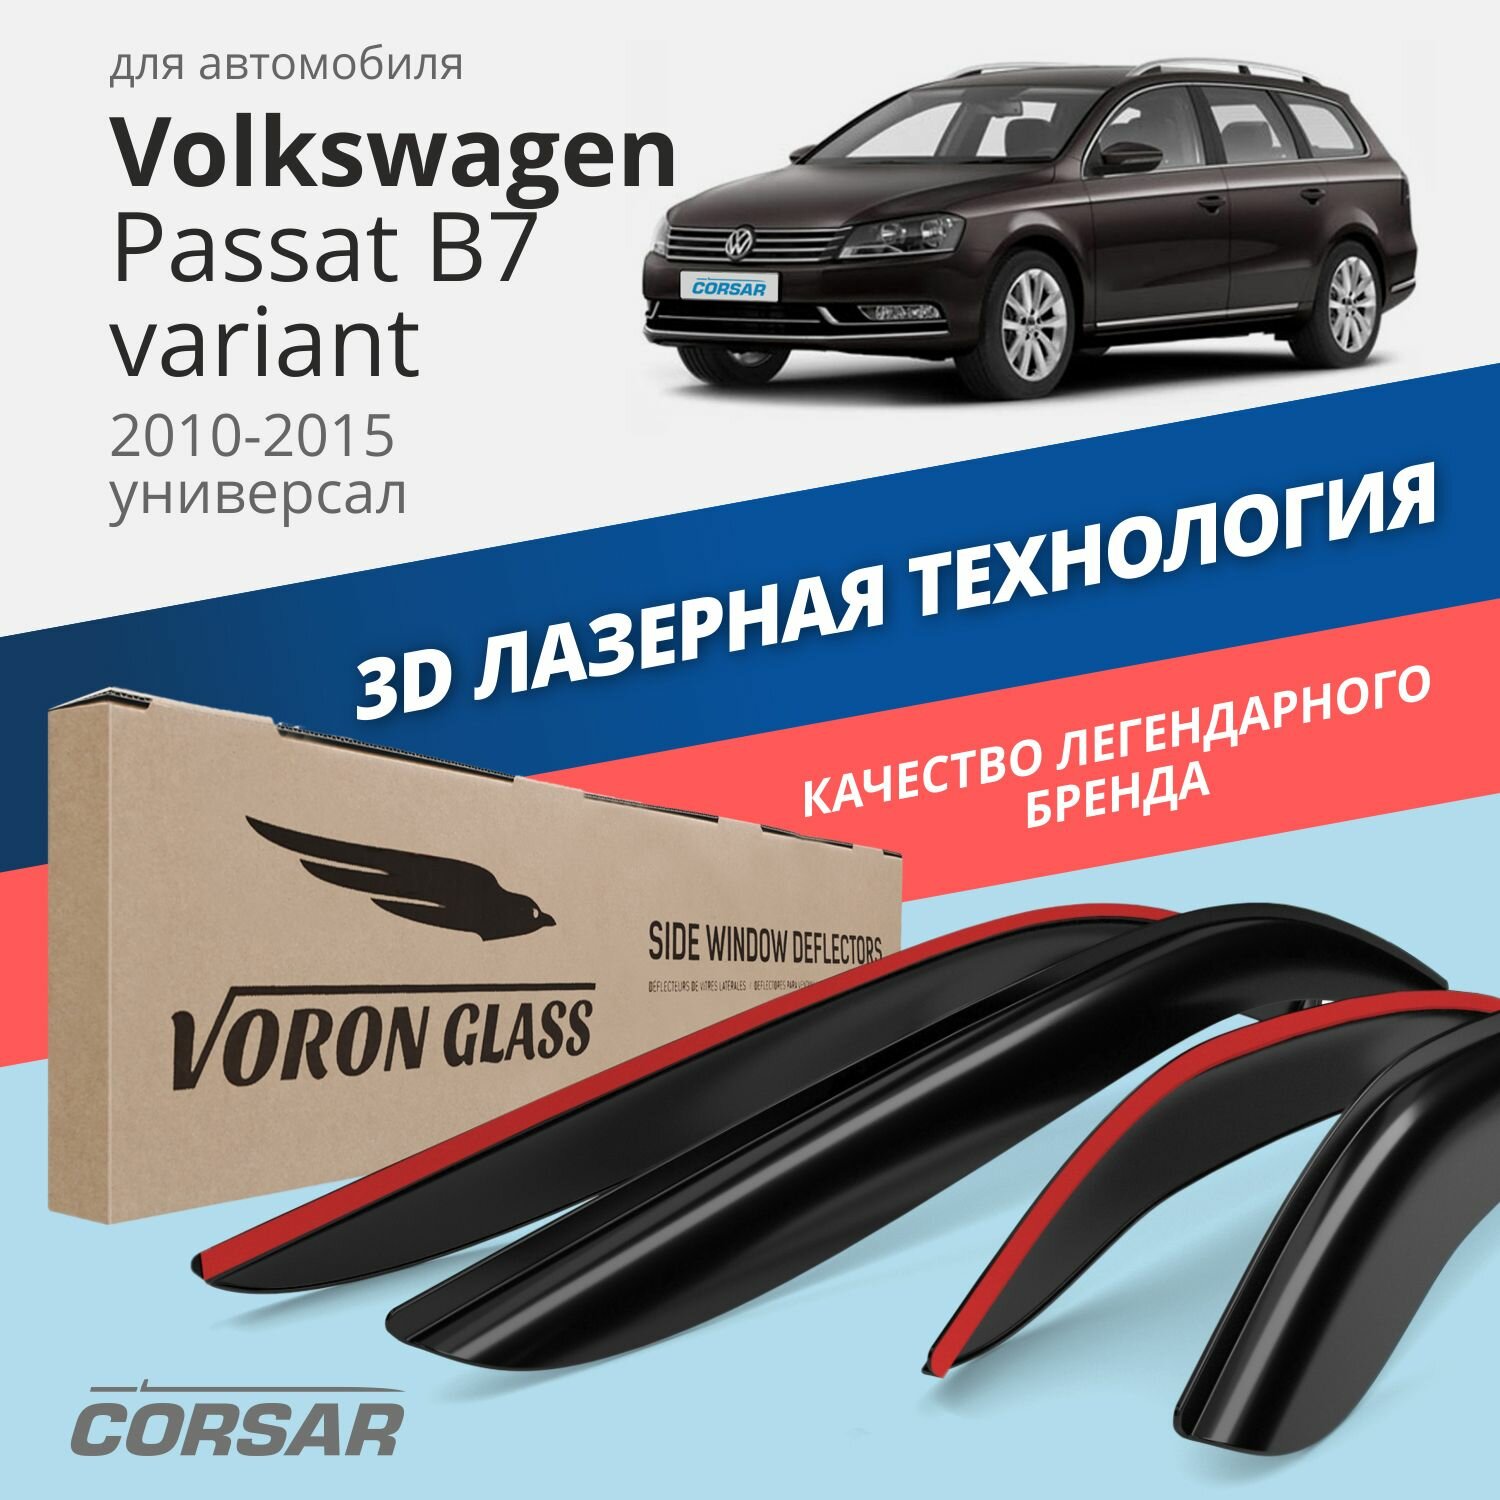 Дефлекторы окон Voron Glass серия Corsar для Volkswagen Passat B7 2010-2015 универсал накладные 4 шт.